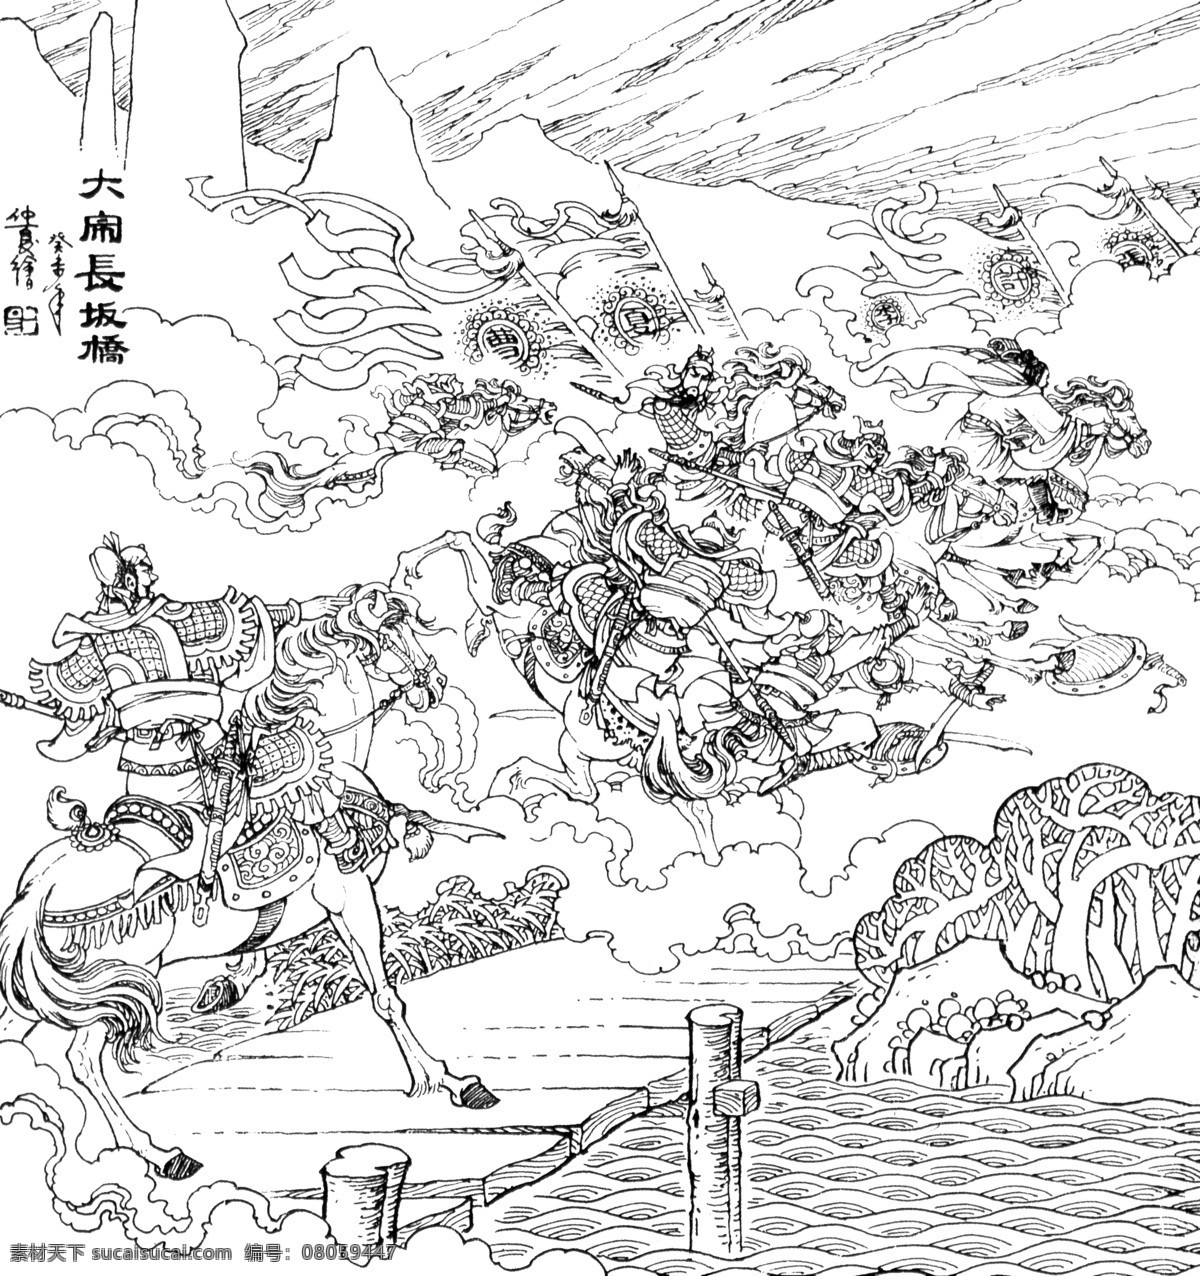 大闹长坂桥 三国演义 张飞 白描 人物 古代人物 文化艺术 绘画书法 传统文化